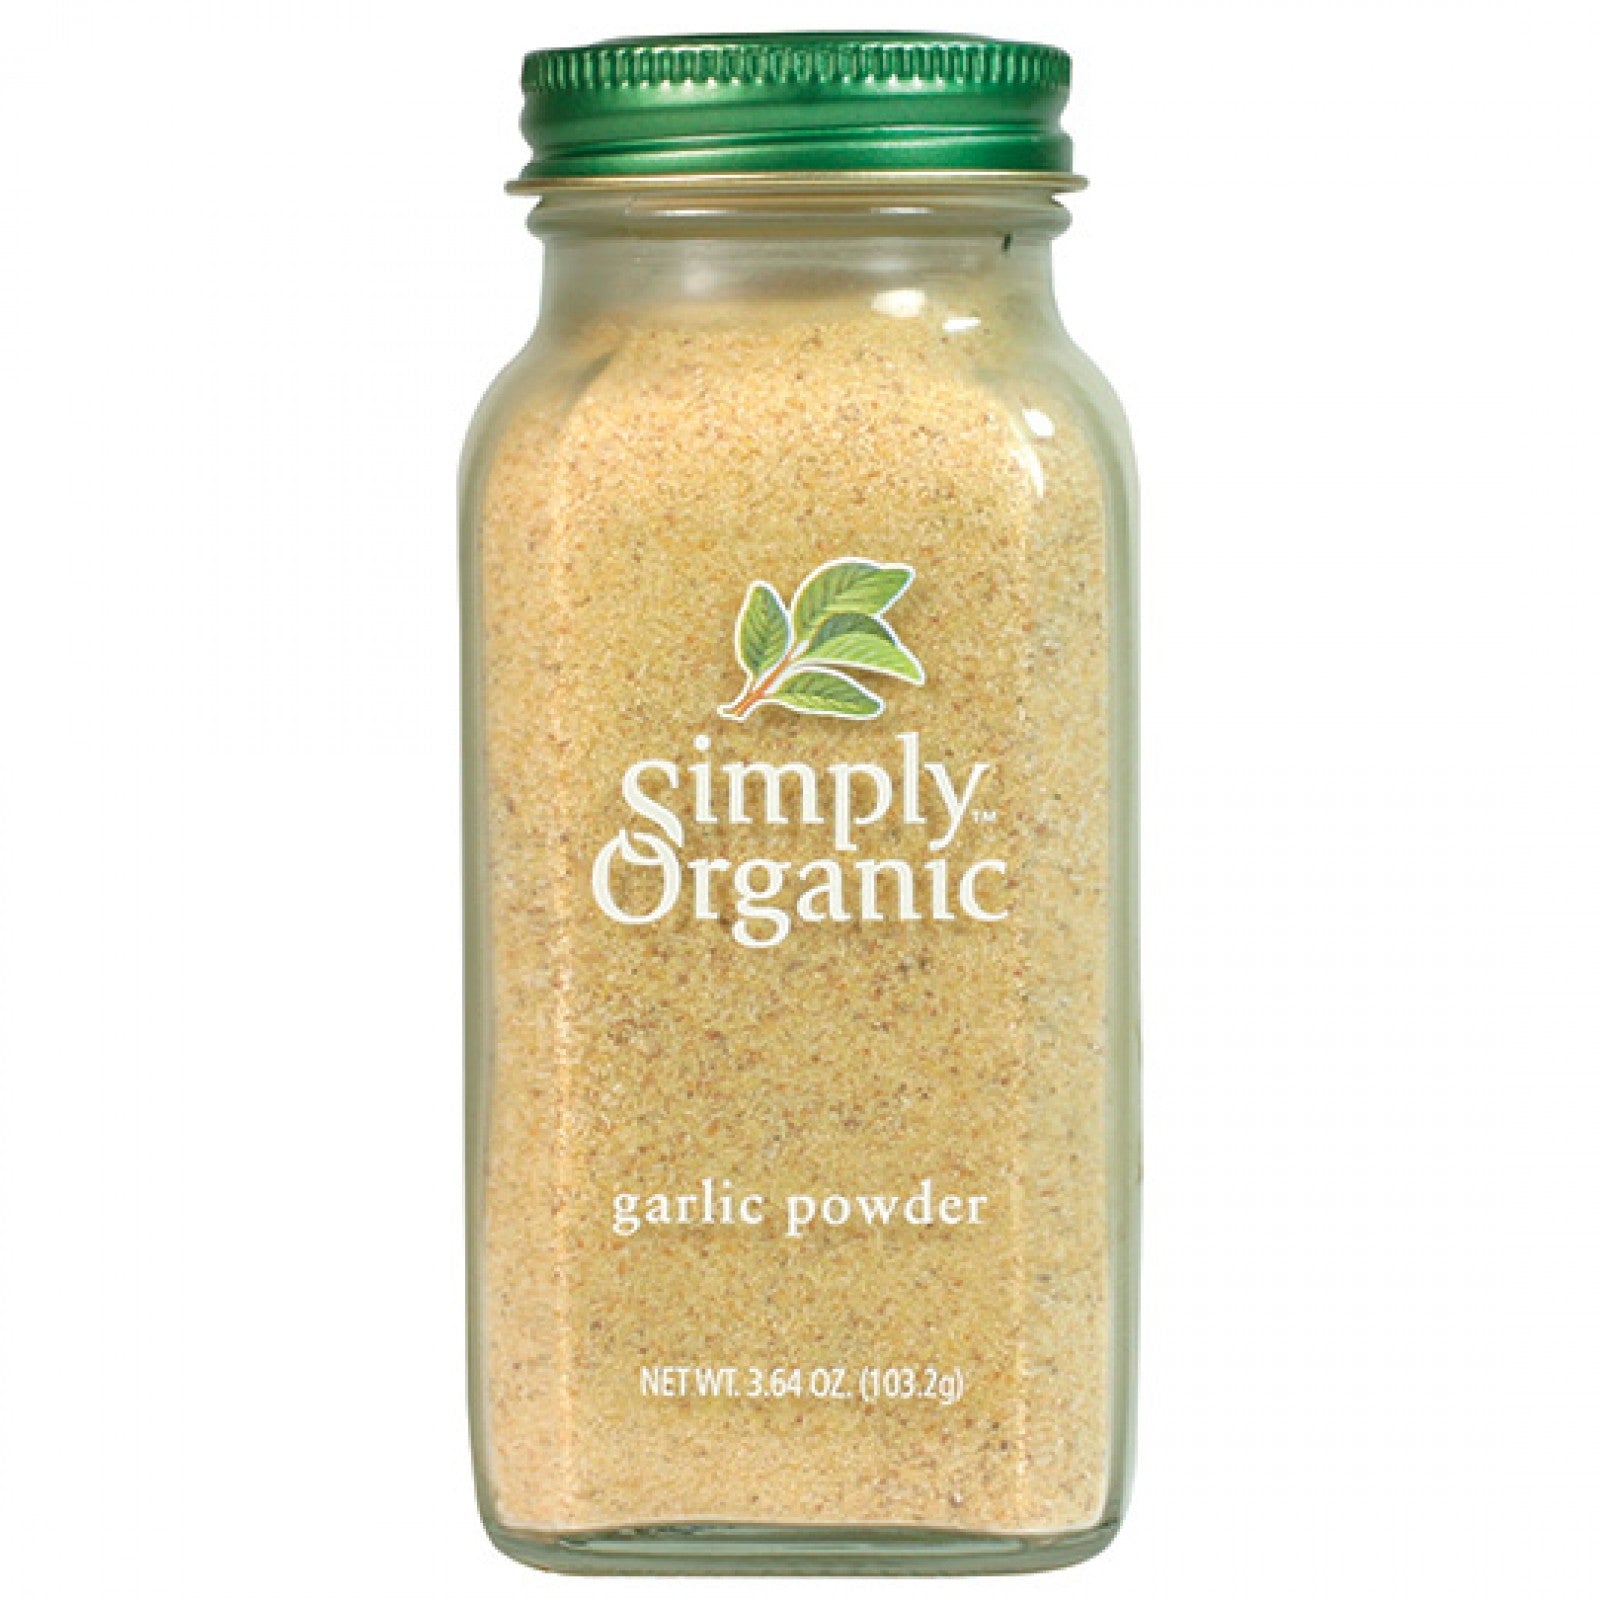 Simply Organic, Garlic Powder, 3.64 oz